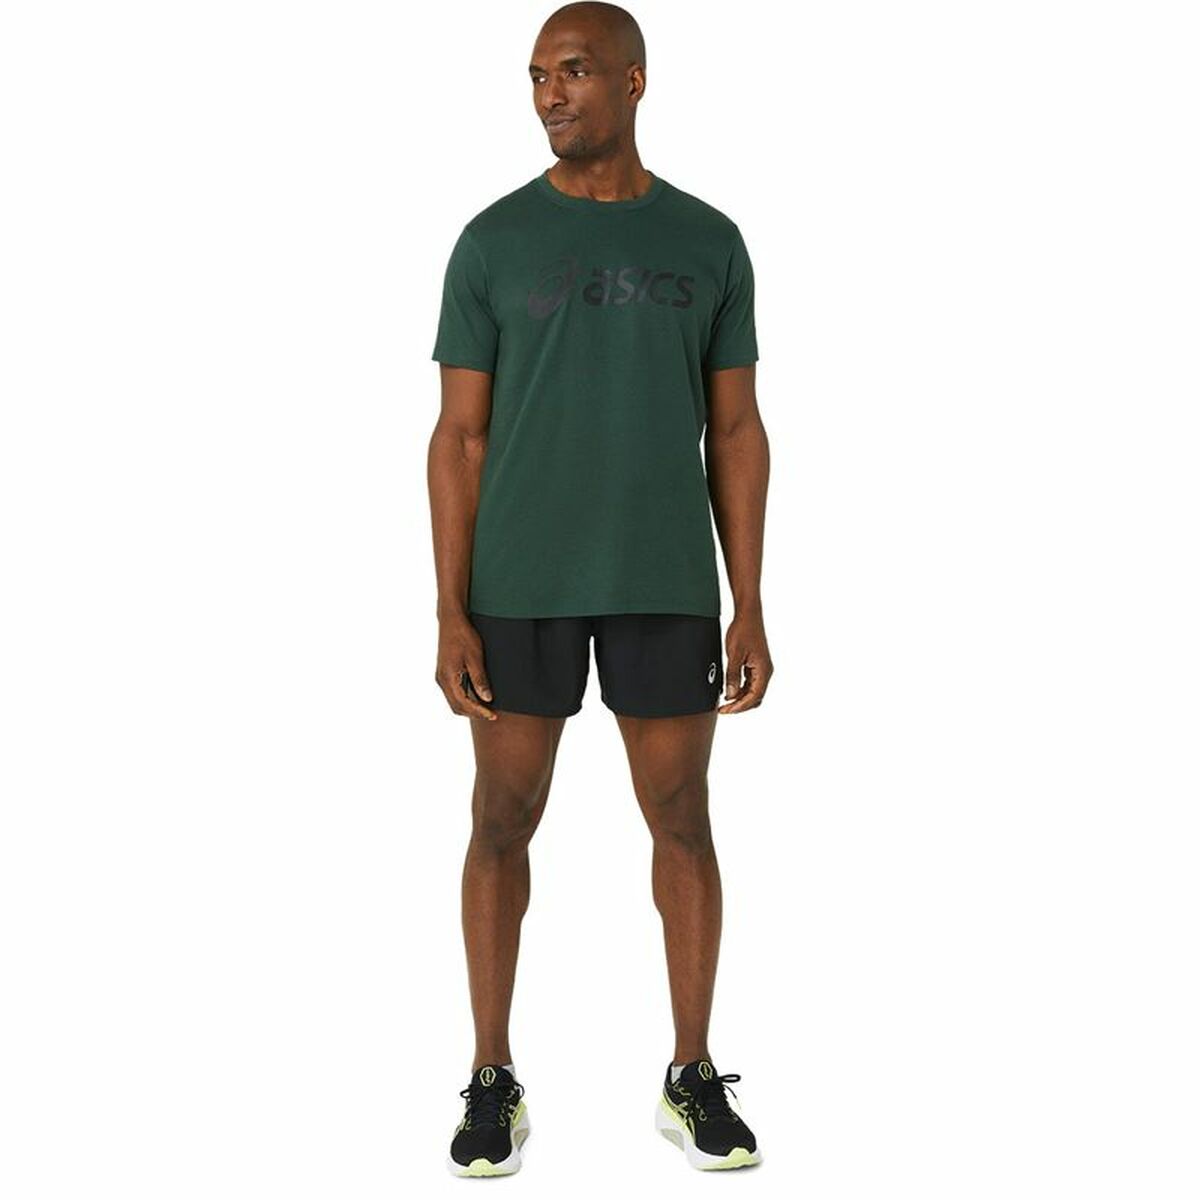 T-shirt à manches courtes homme Asics Big Logo Vert foncé